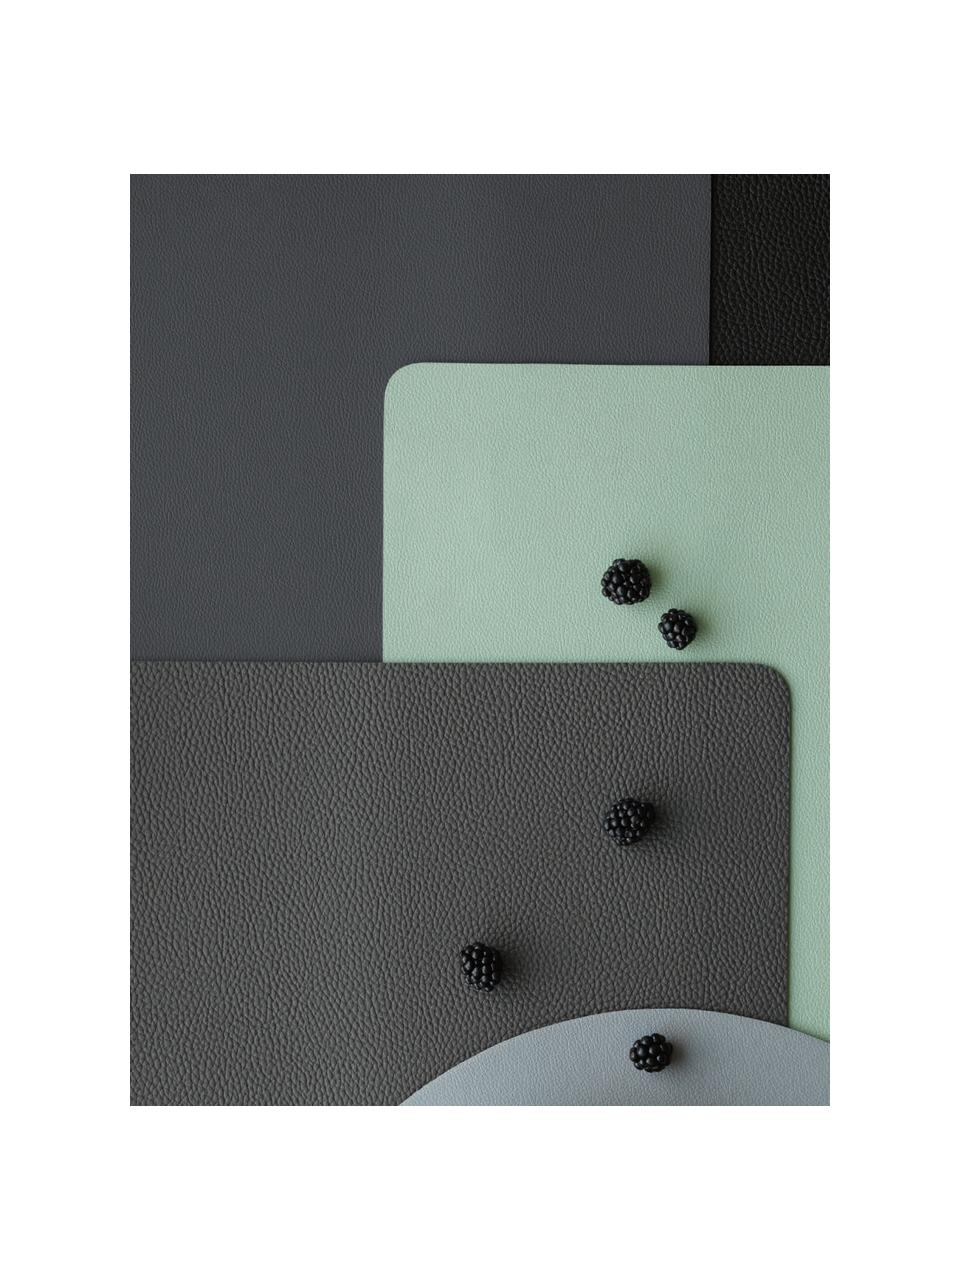 Sets de table en plastique aspect cuir Pik, 2 pièces, Plastique (PVC) aspect cuir, Vert menthe, larg. 33 x long. 46 cm